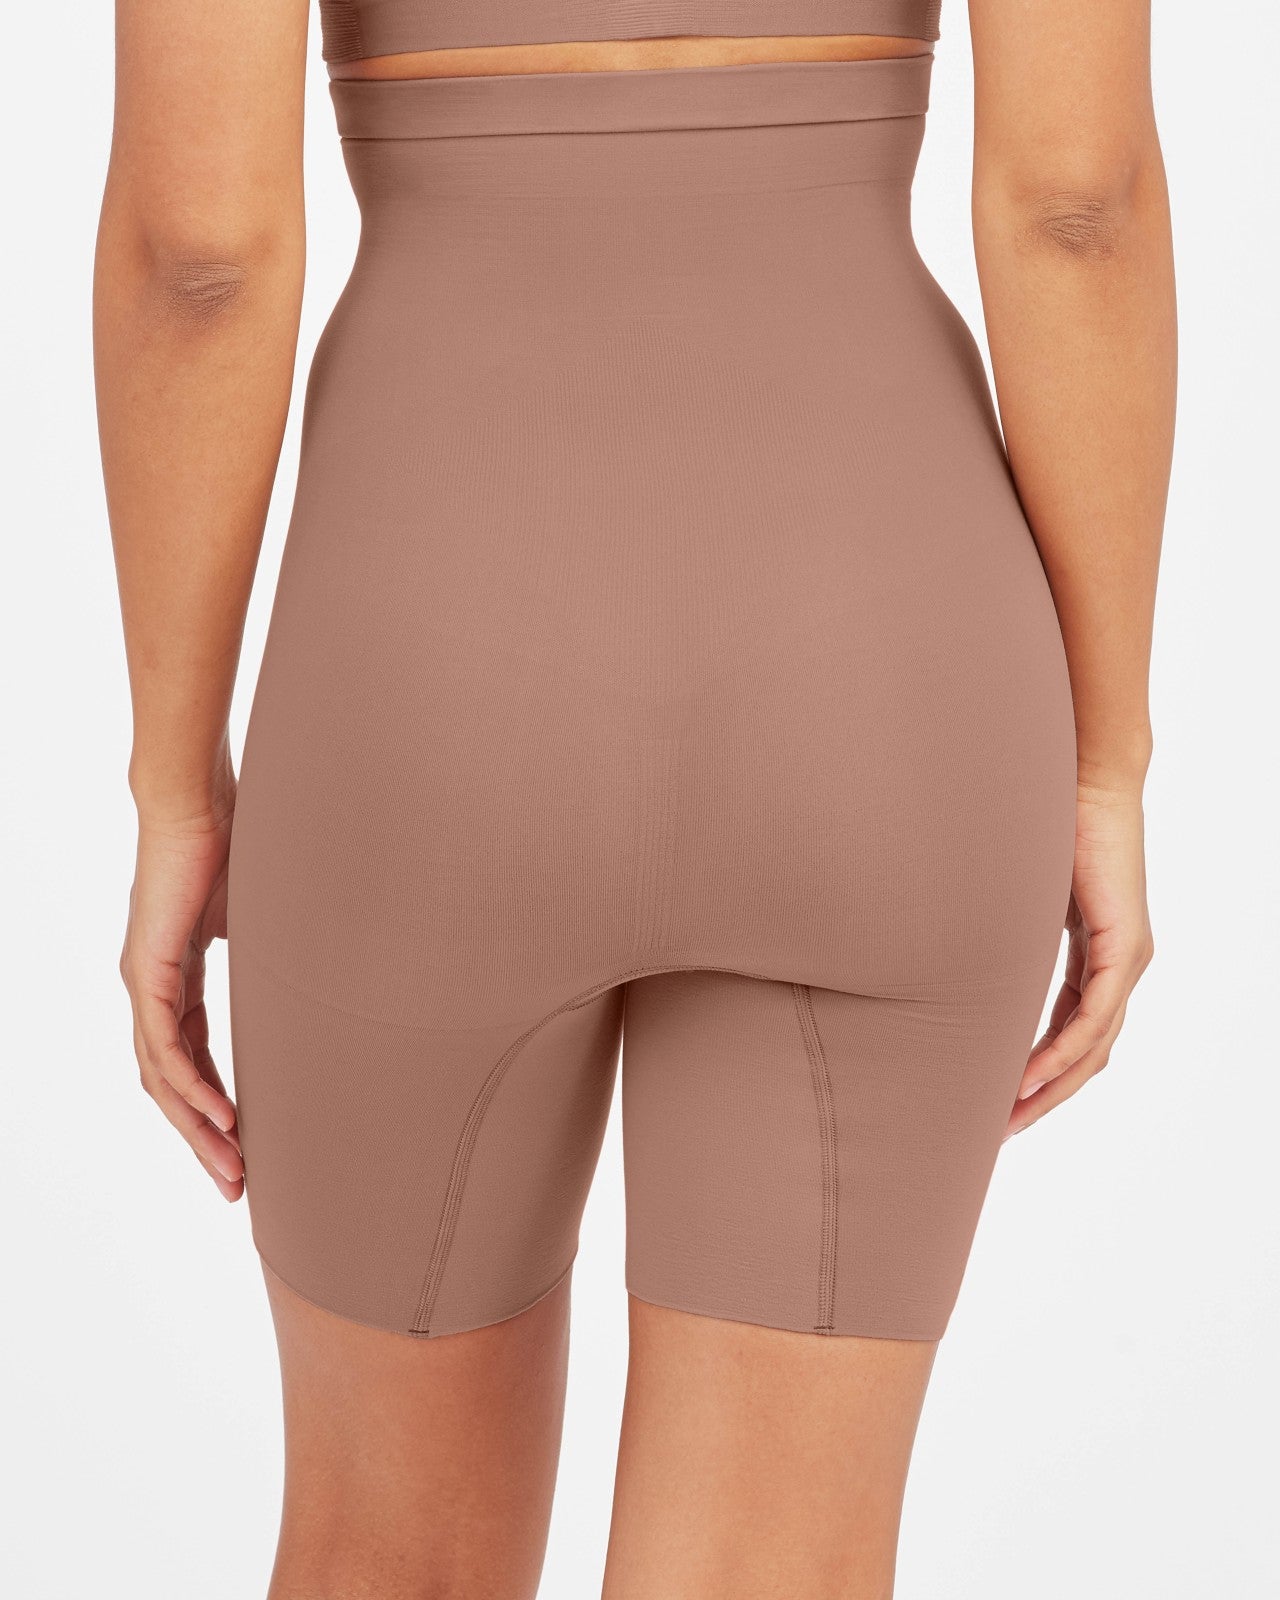 Spanx shapewear - Higher Power Shorts Cafe au lait – Dresses Boutique